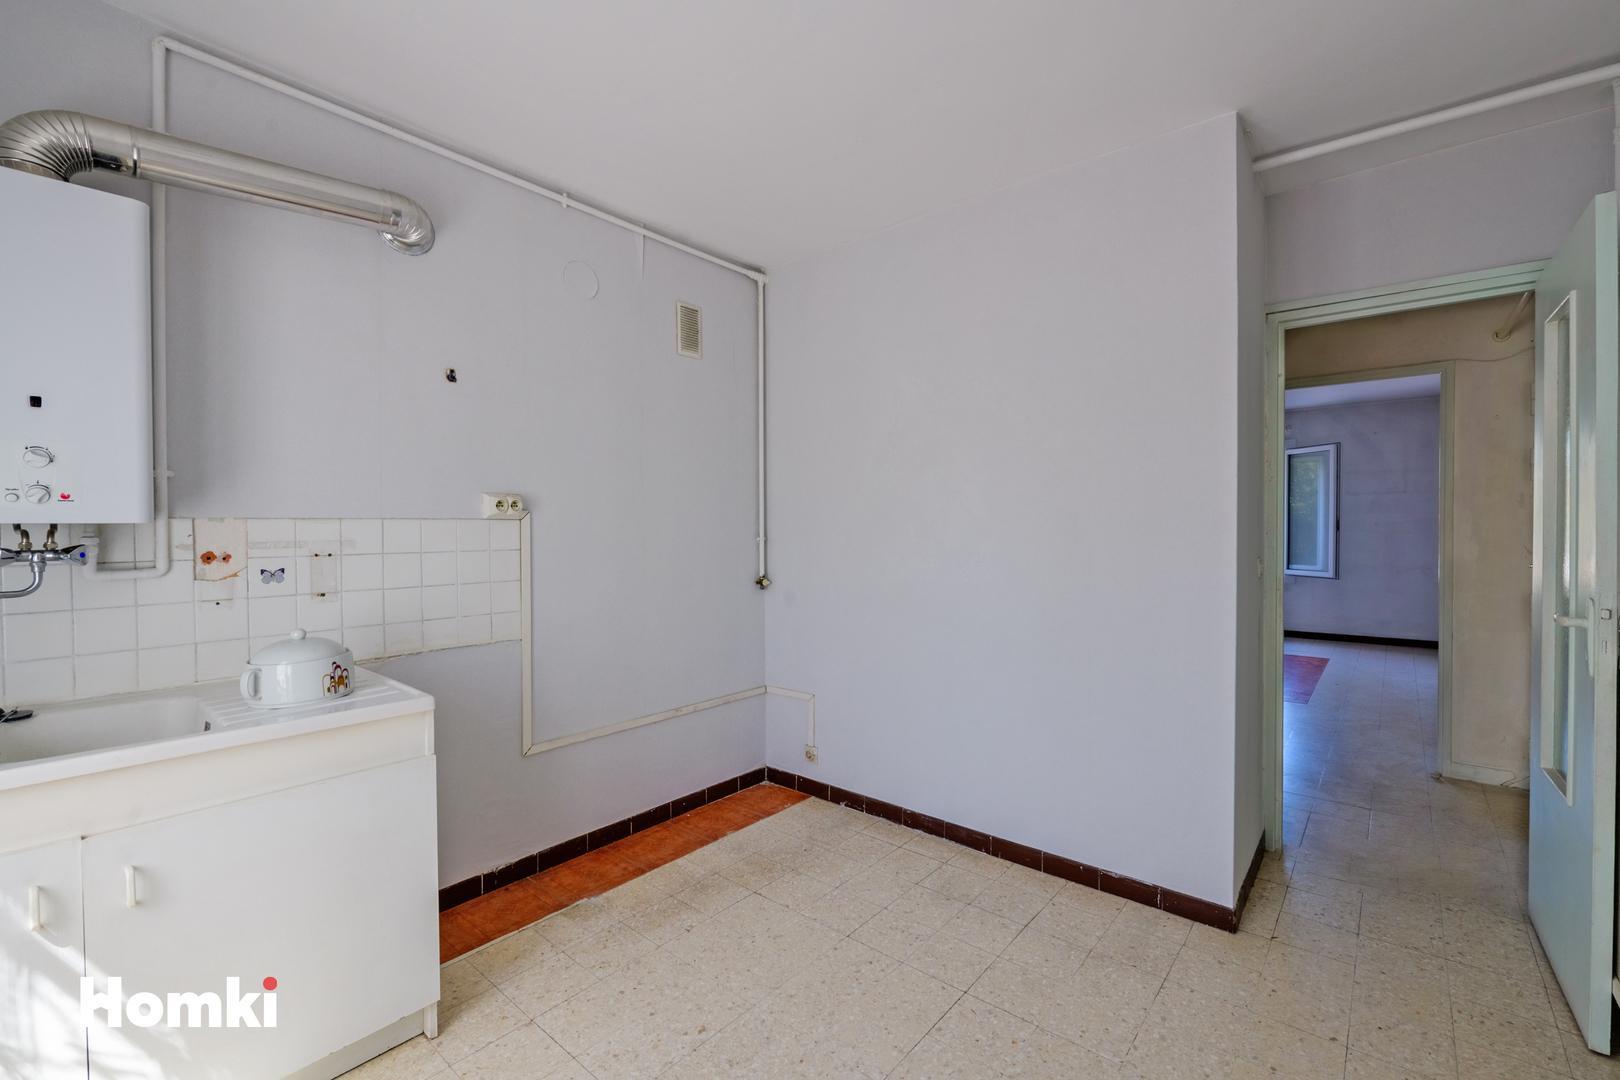 Homki - Vente Appartement  de 59.0 m² à Nîmes 30000